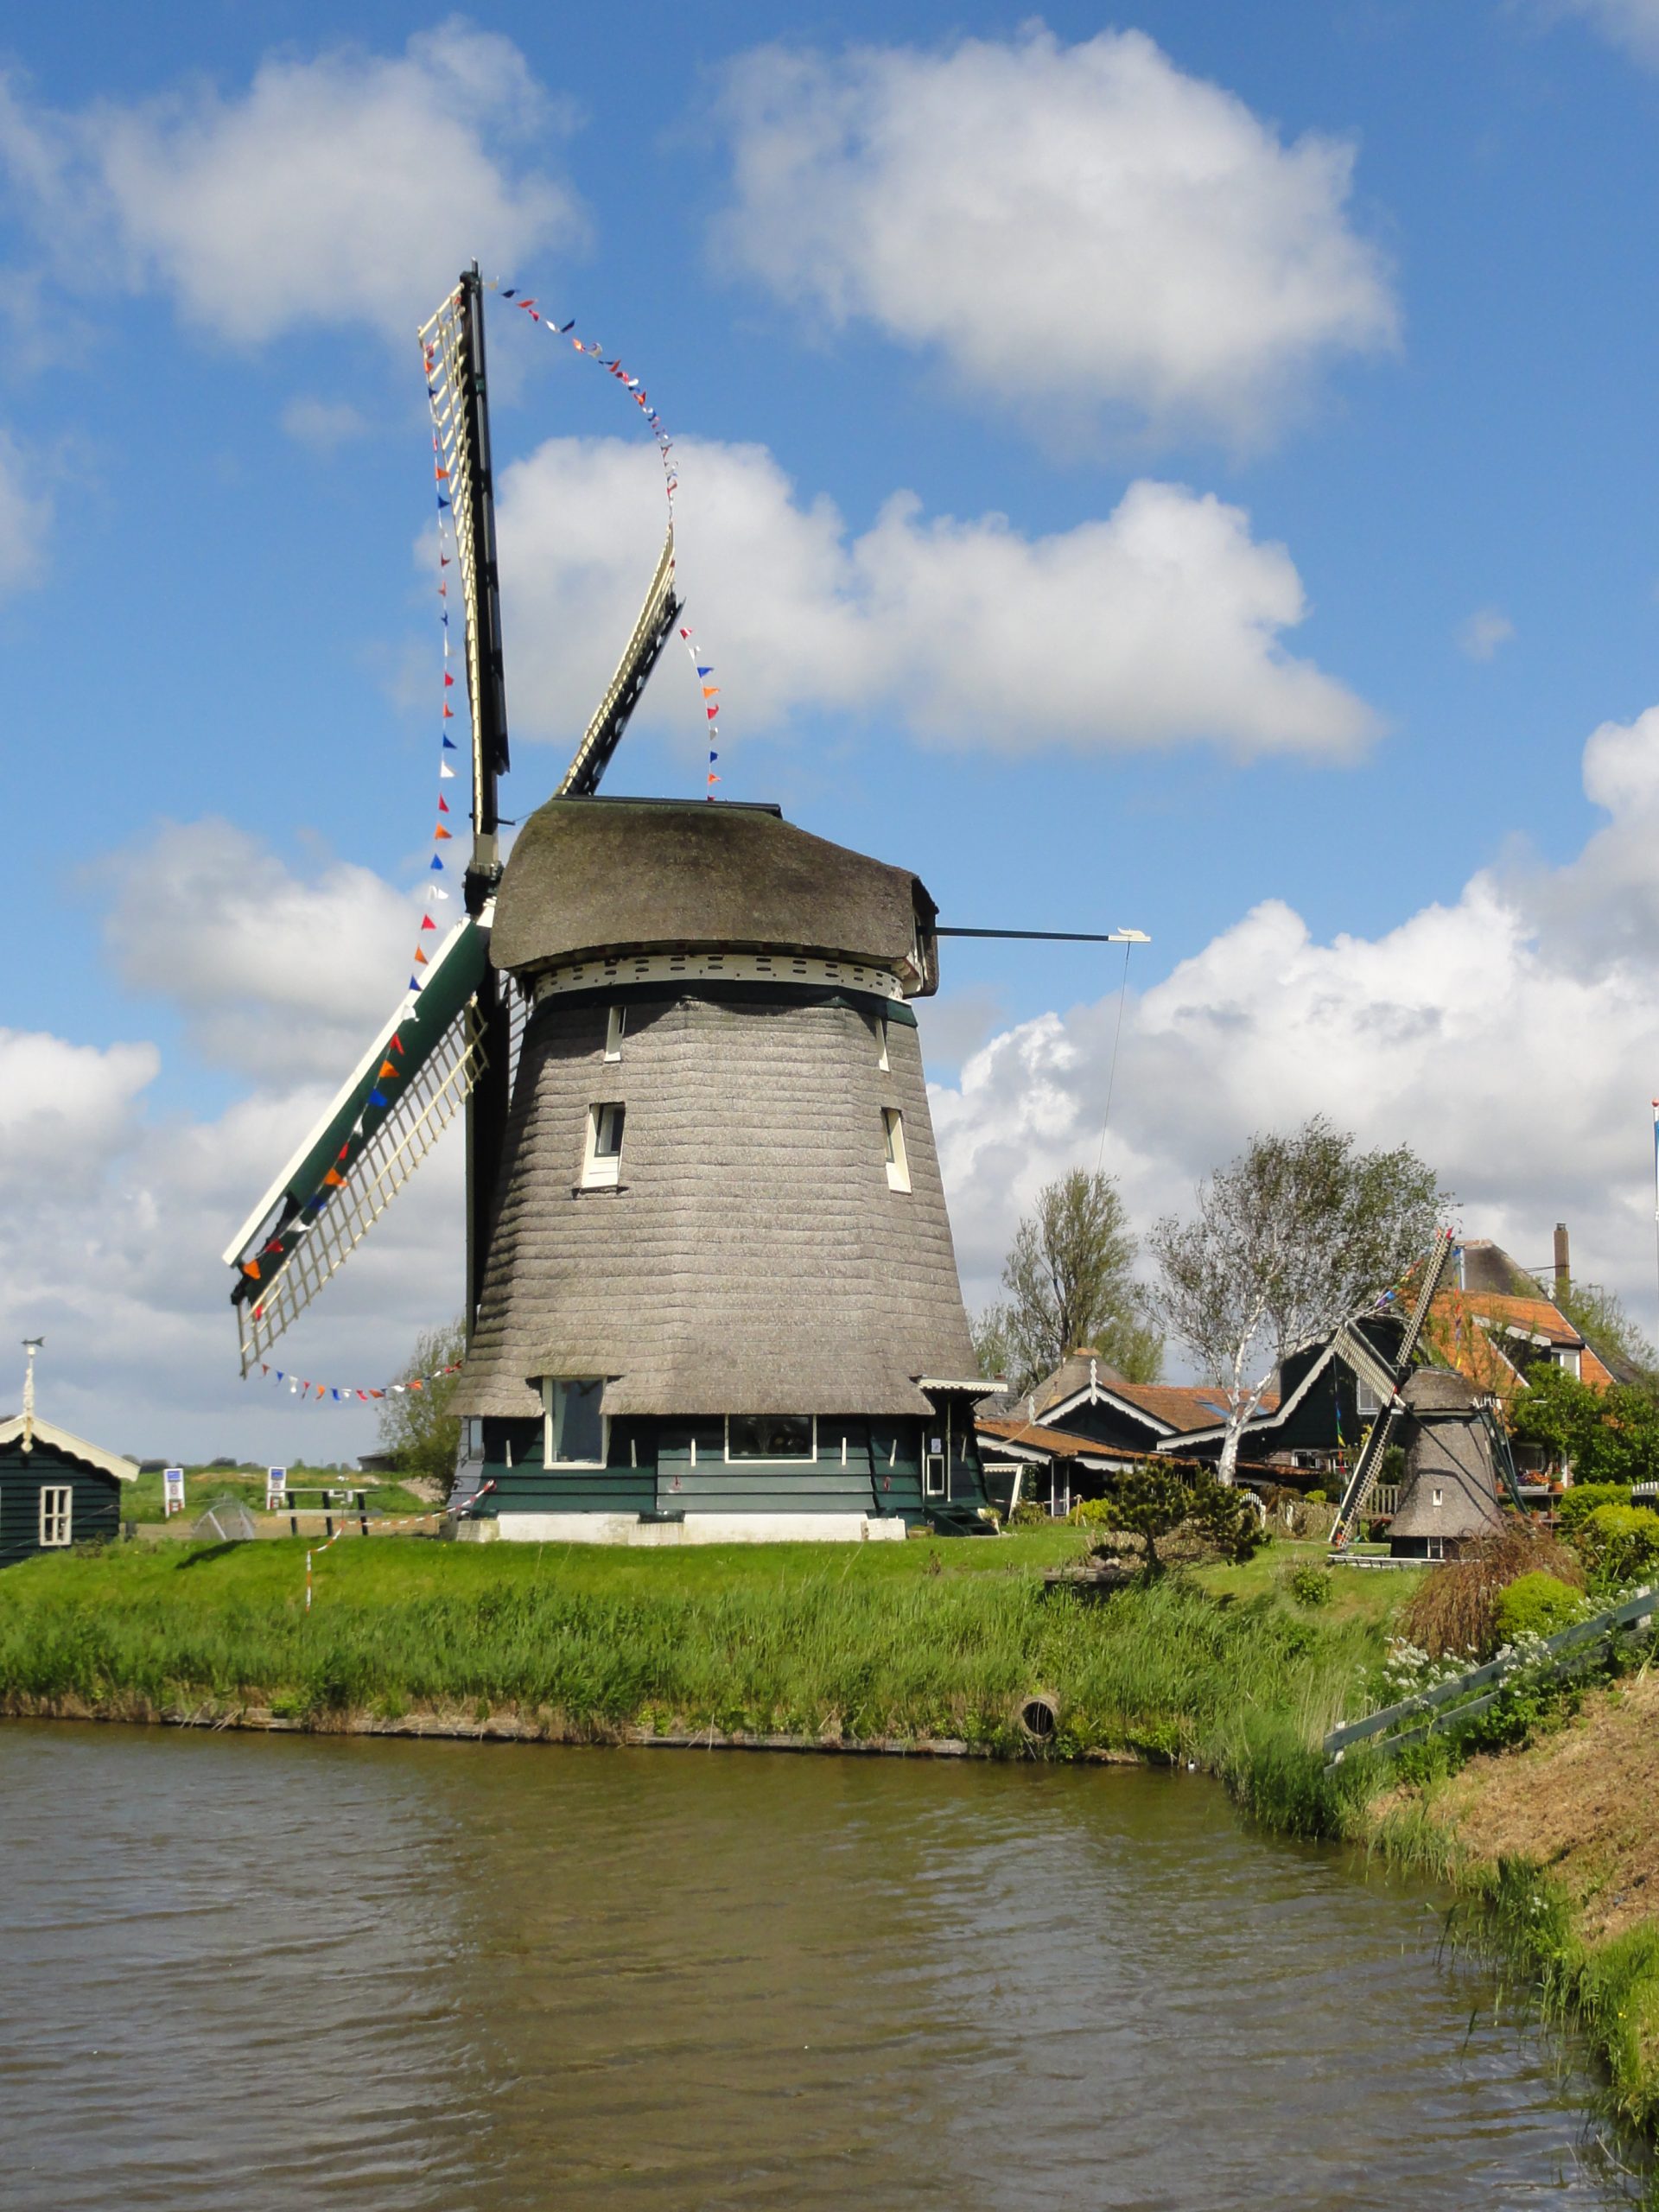 Groenvelder Molen von 1529 - Nordhollands älteste Poldermühle